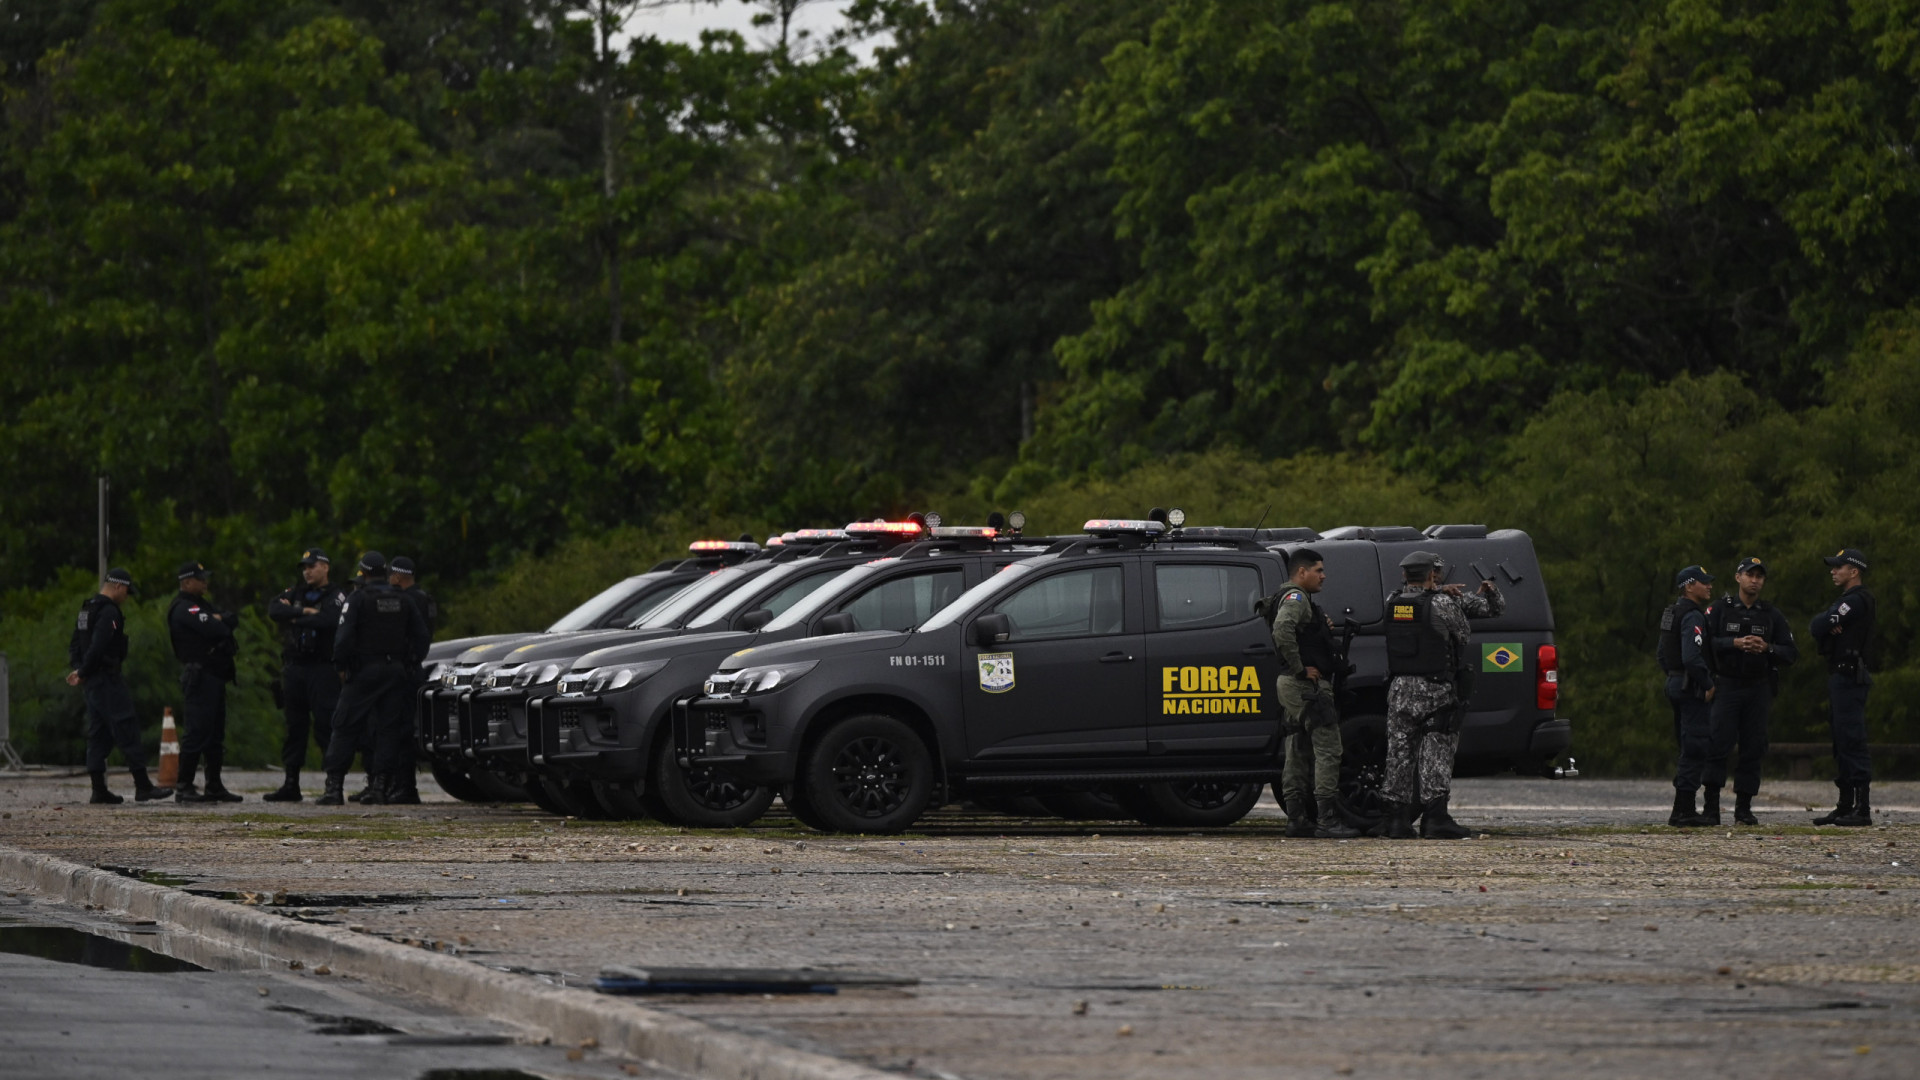 Agentes da Força Nacional começam a atuar no Rio nesta segunda-feira